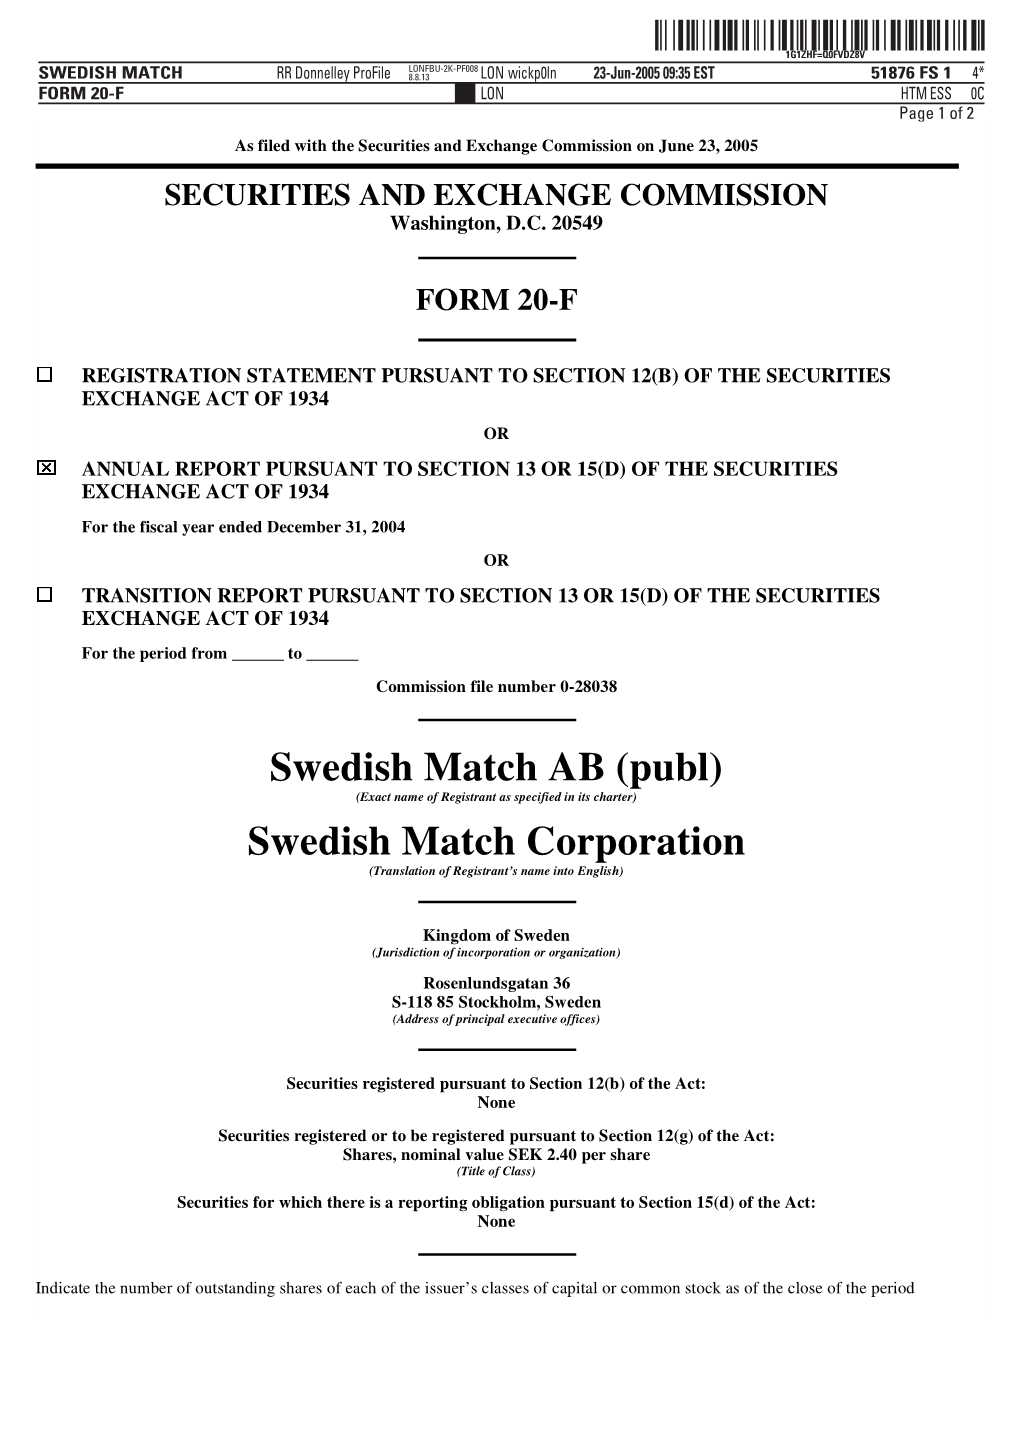 Swedish Match AB (Publ) Swedish Match Corporation